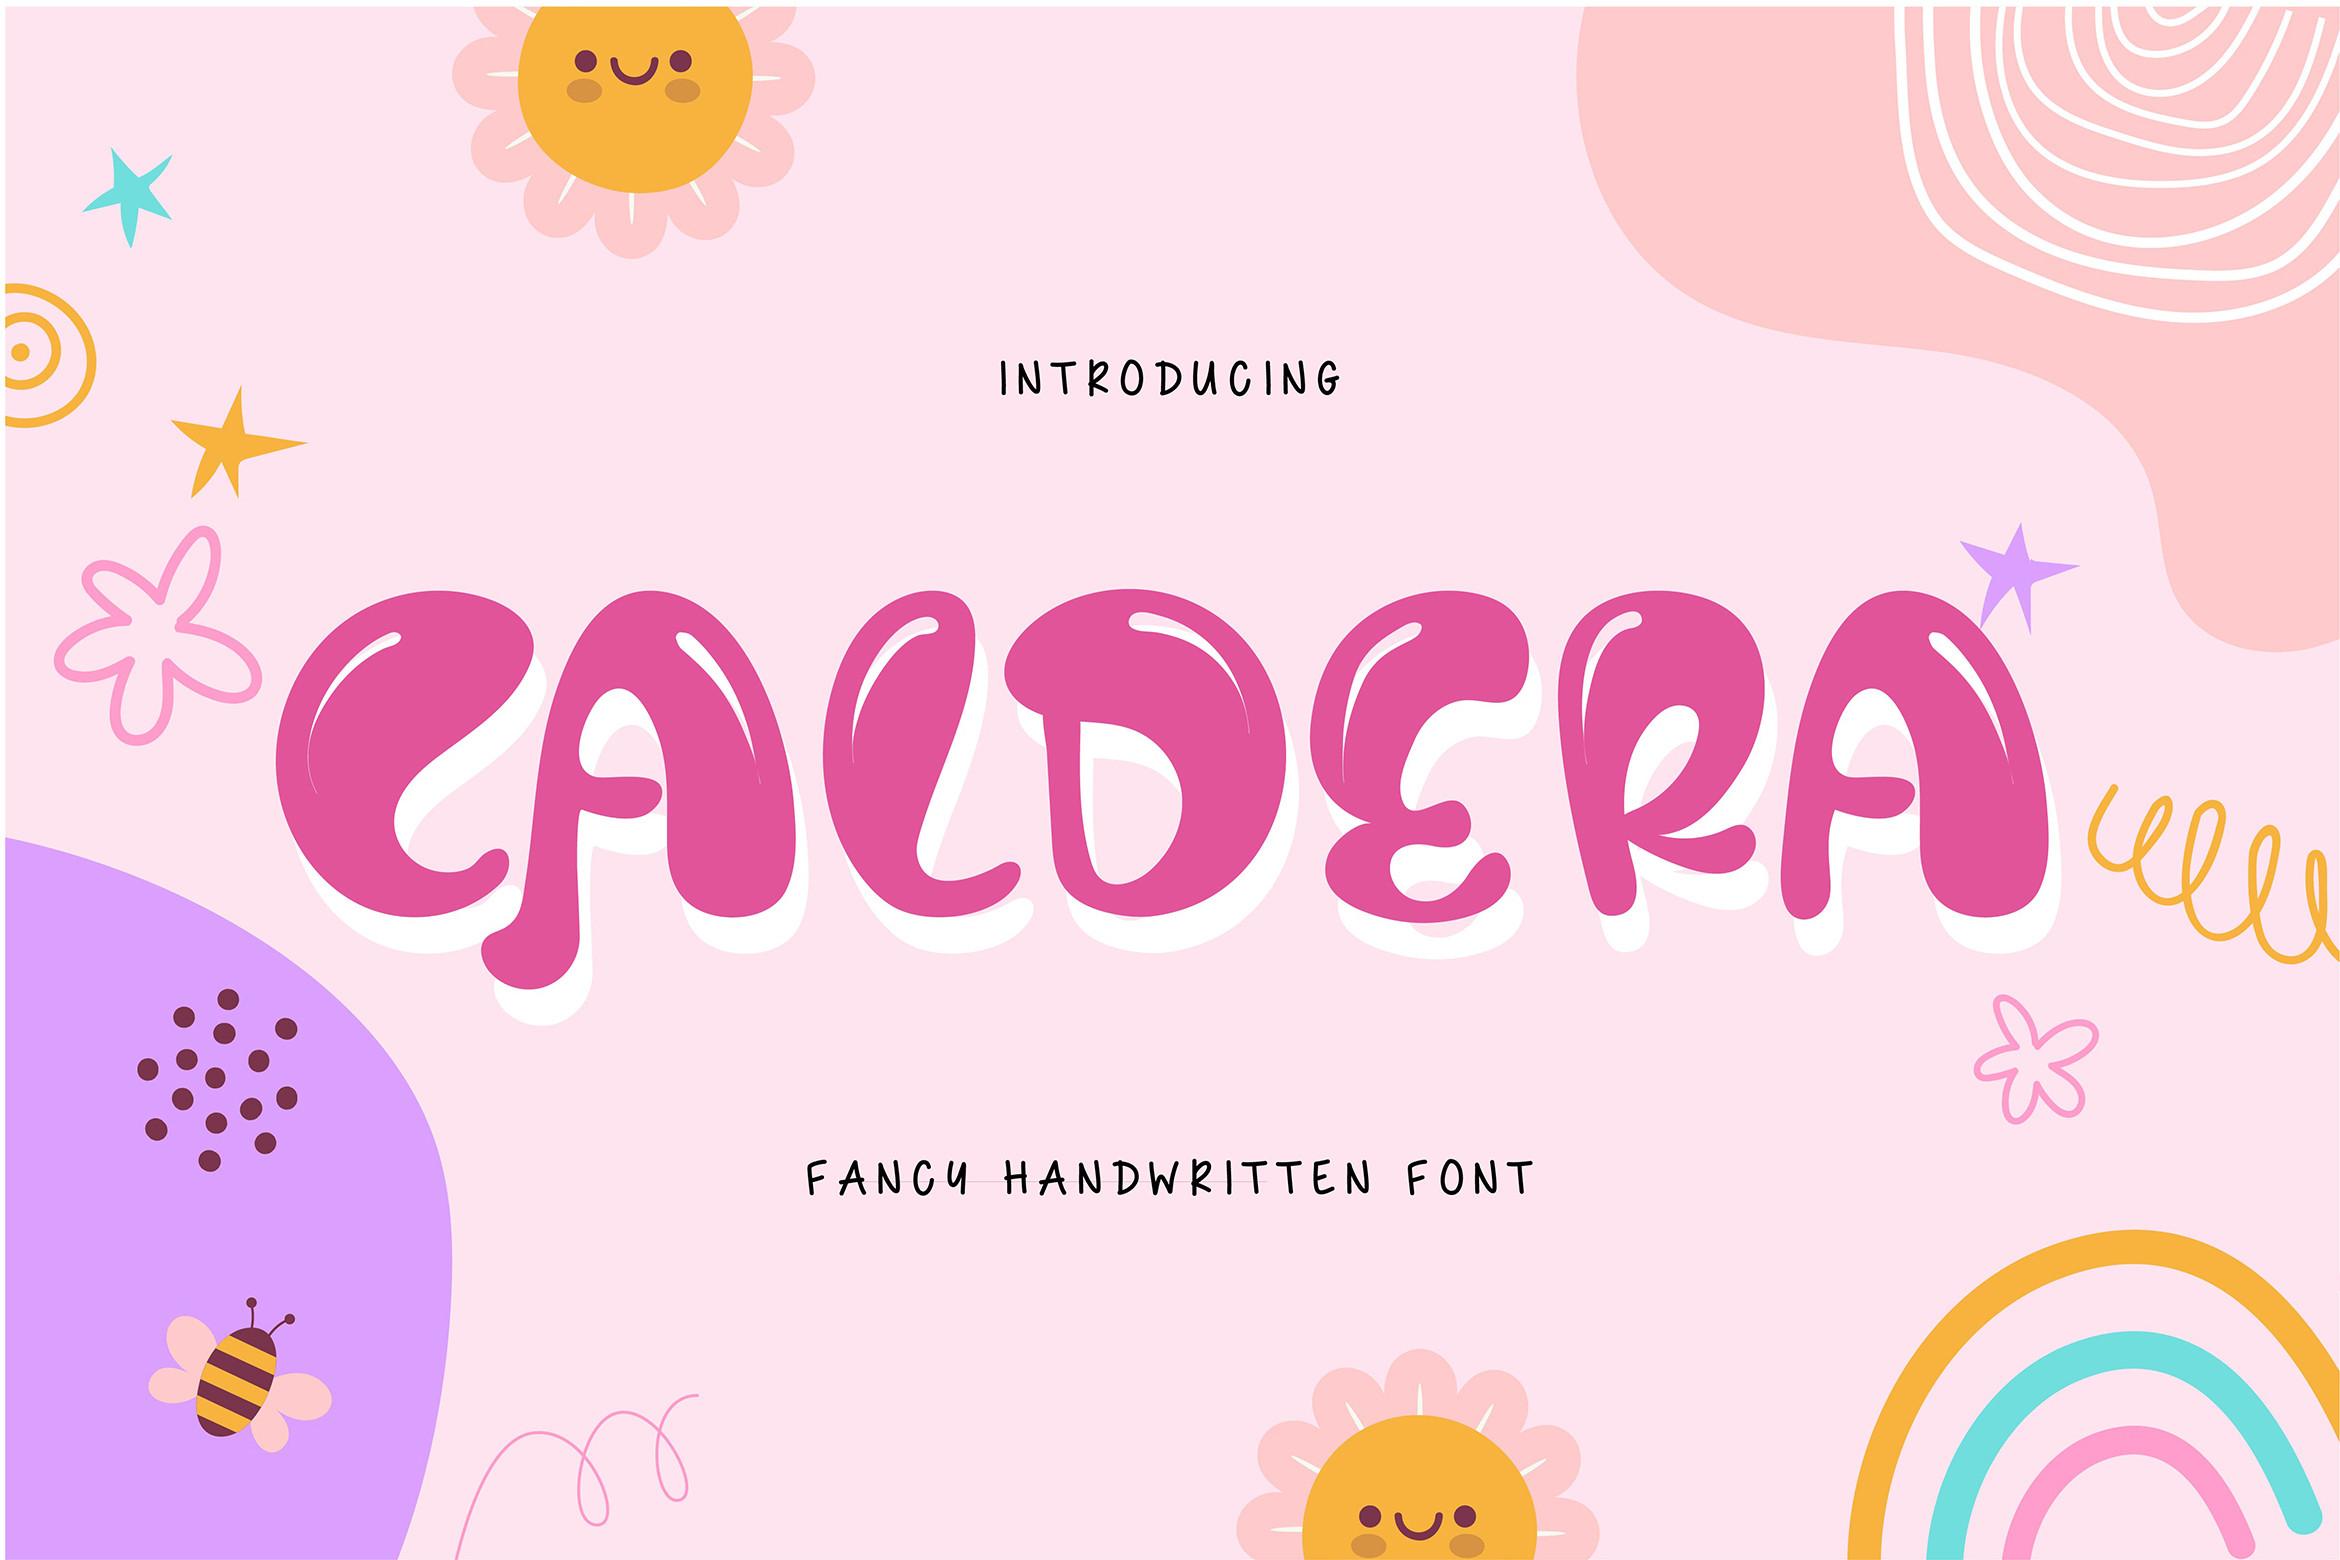 Caldera Font